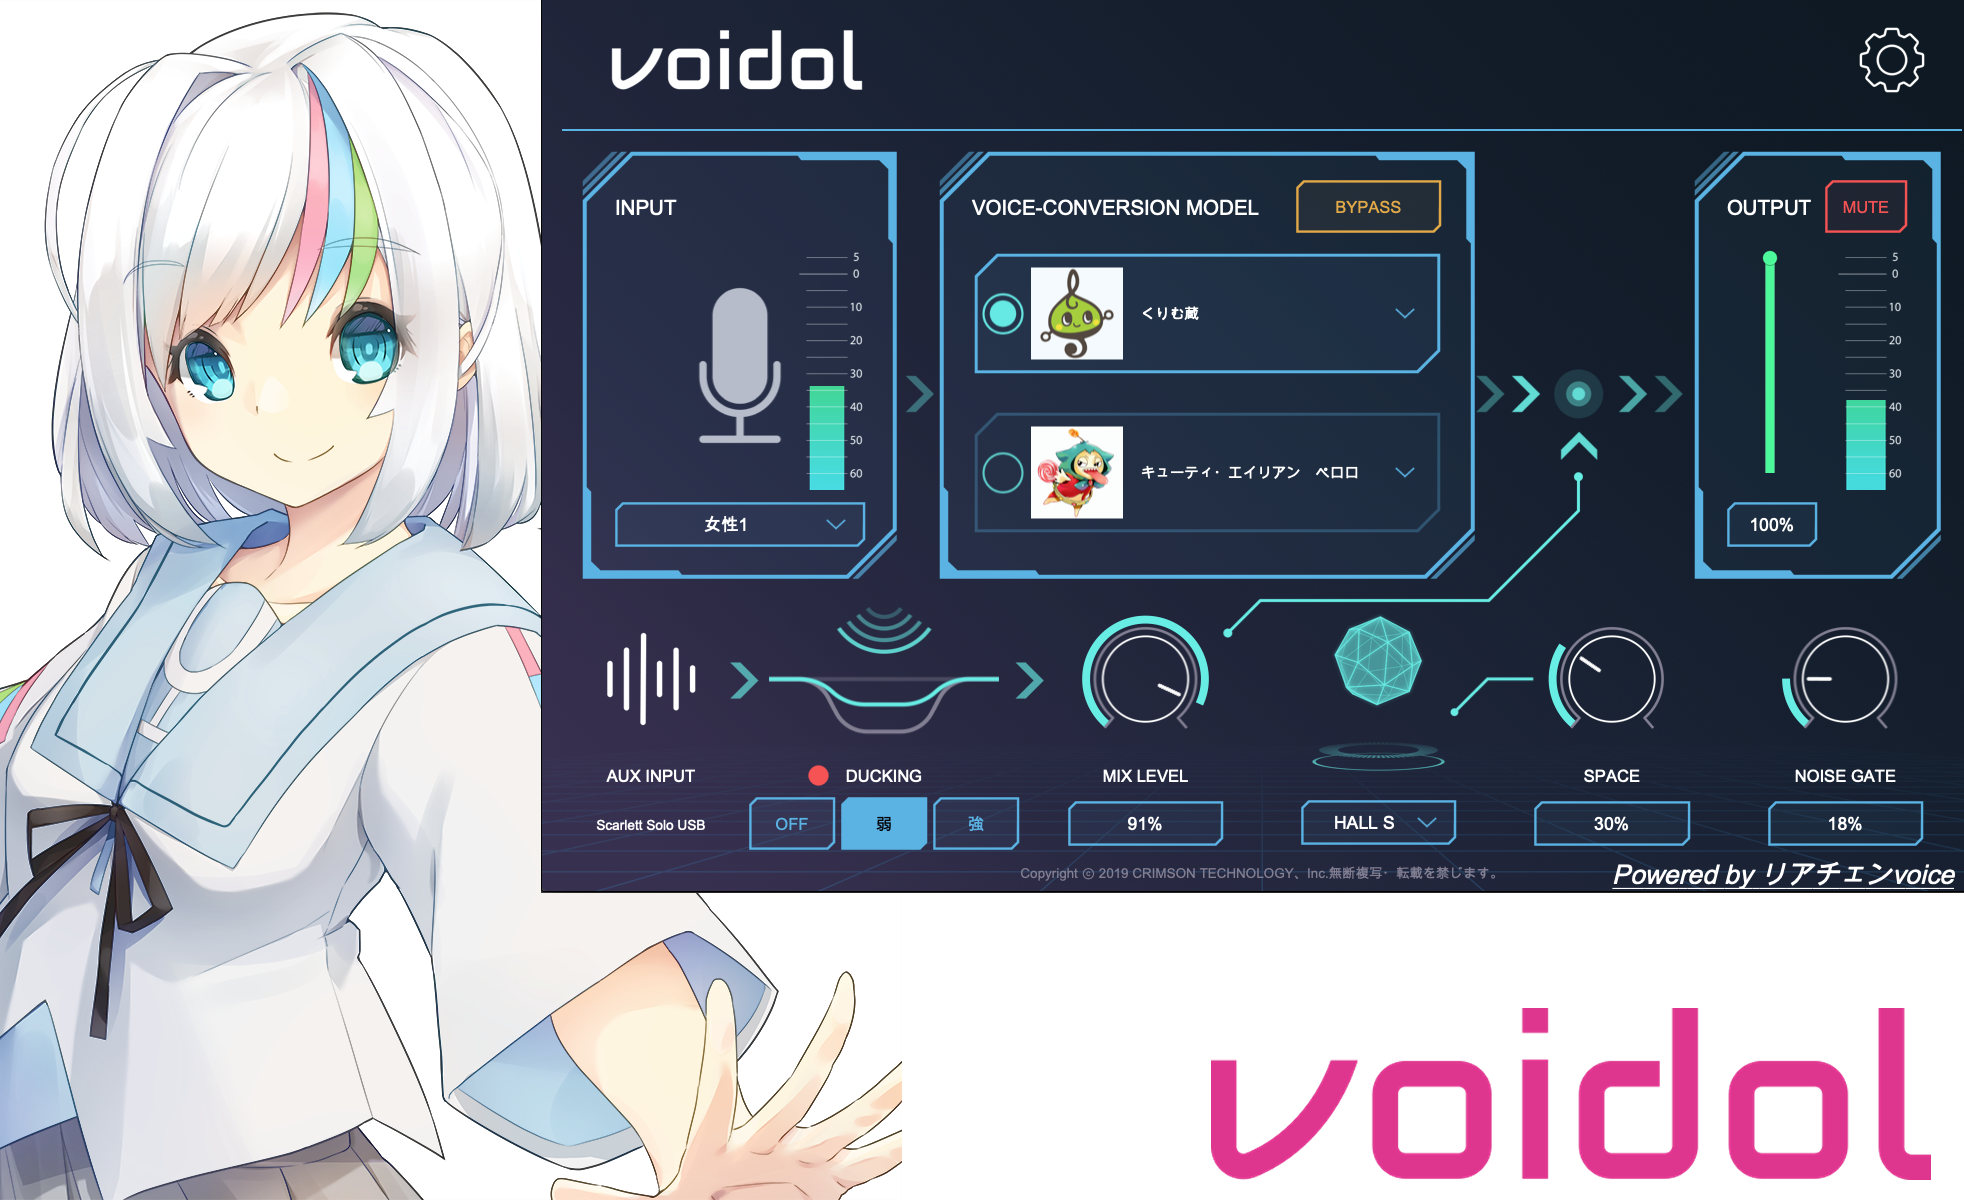 リアルタイム音声変換ソフト、Voidol Mac版が本日より960円で発売開始！